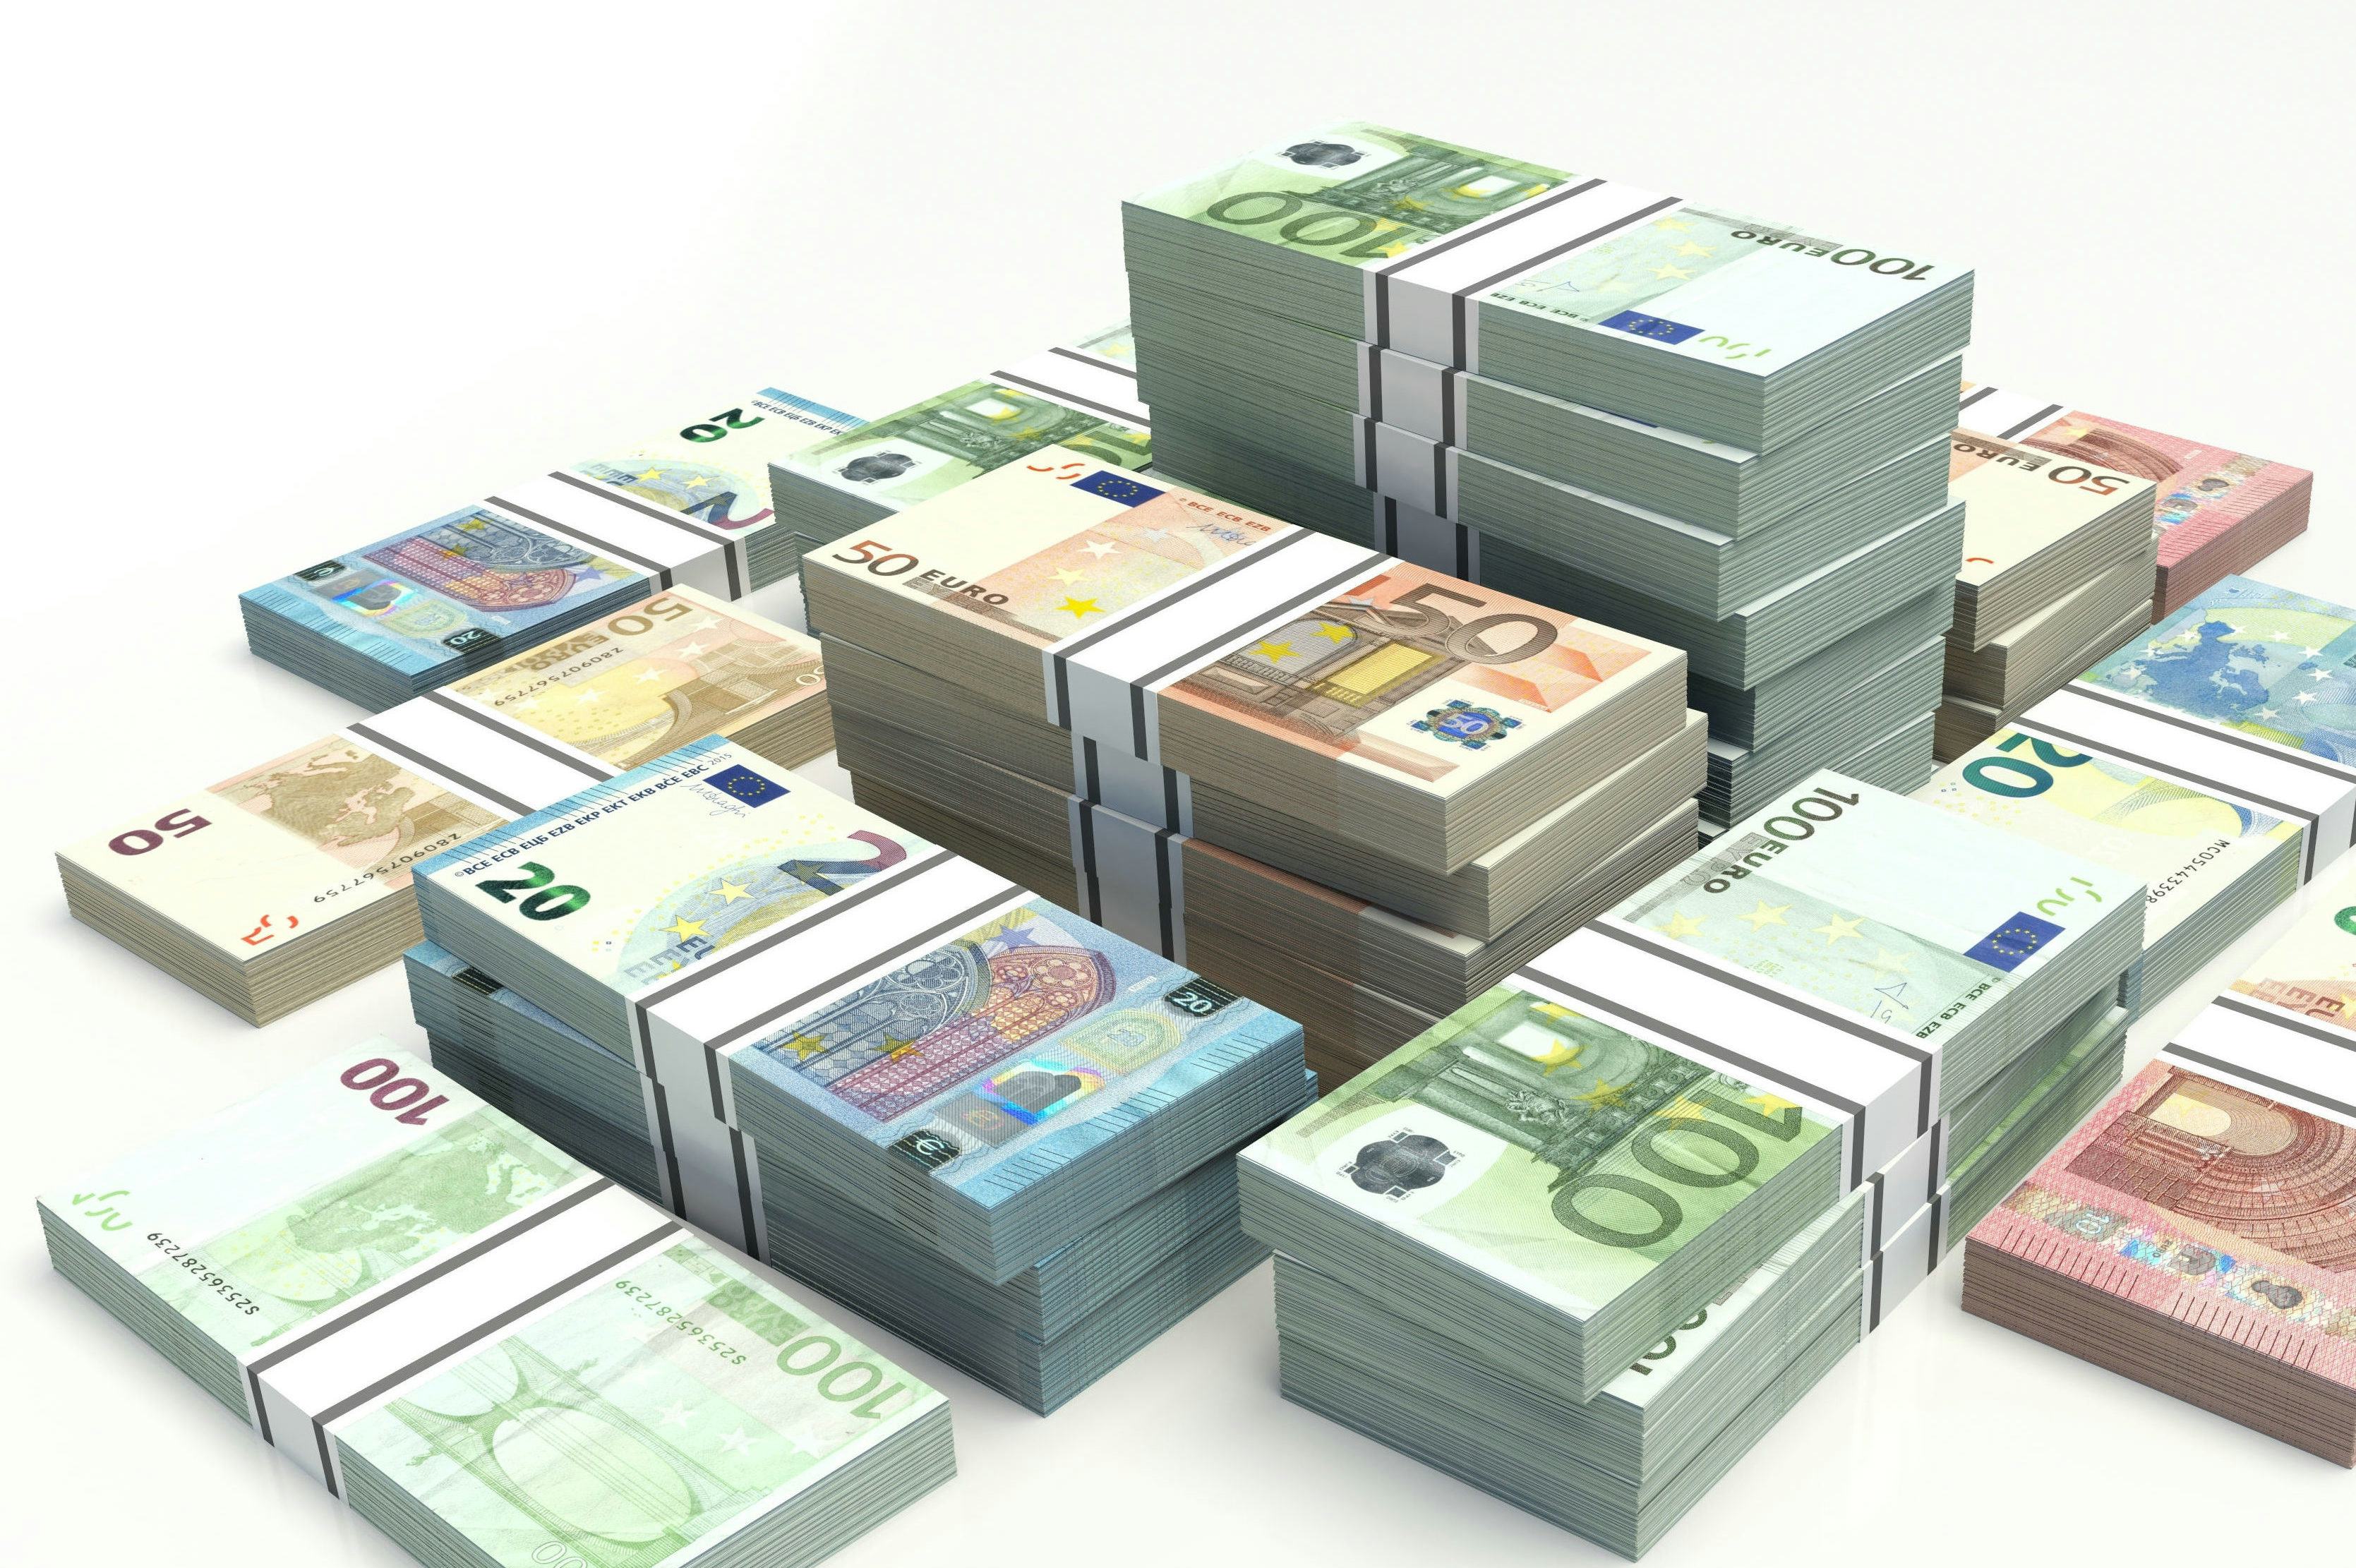 Nederland geeft hoogste vastgoedrendement eurozone